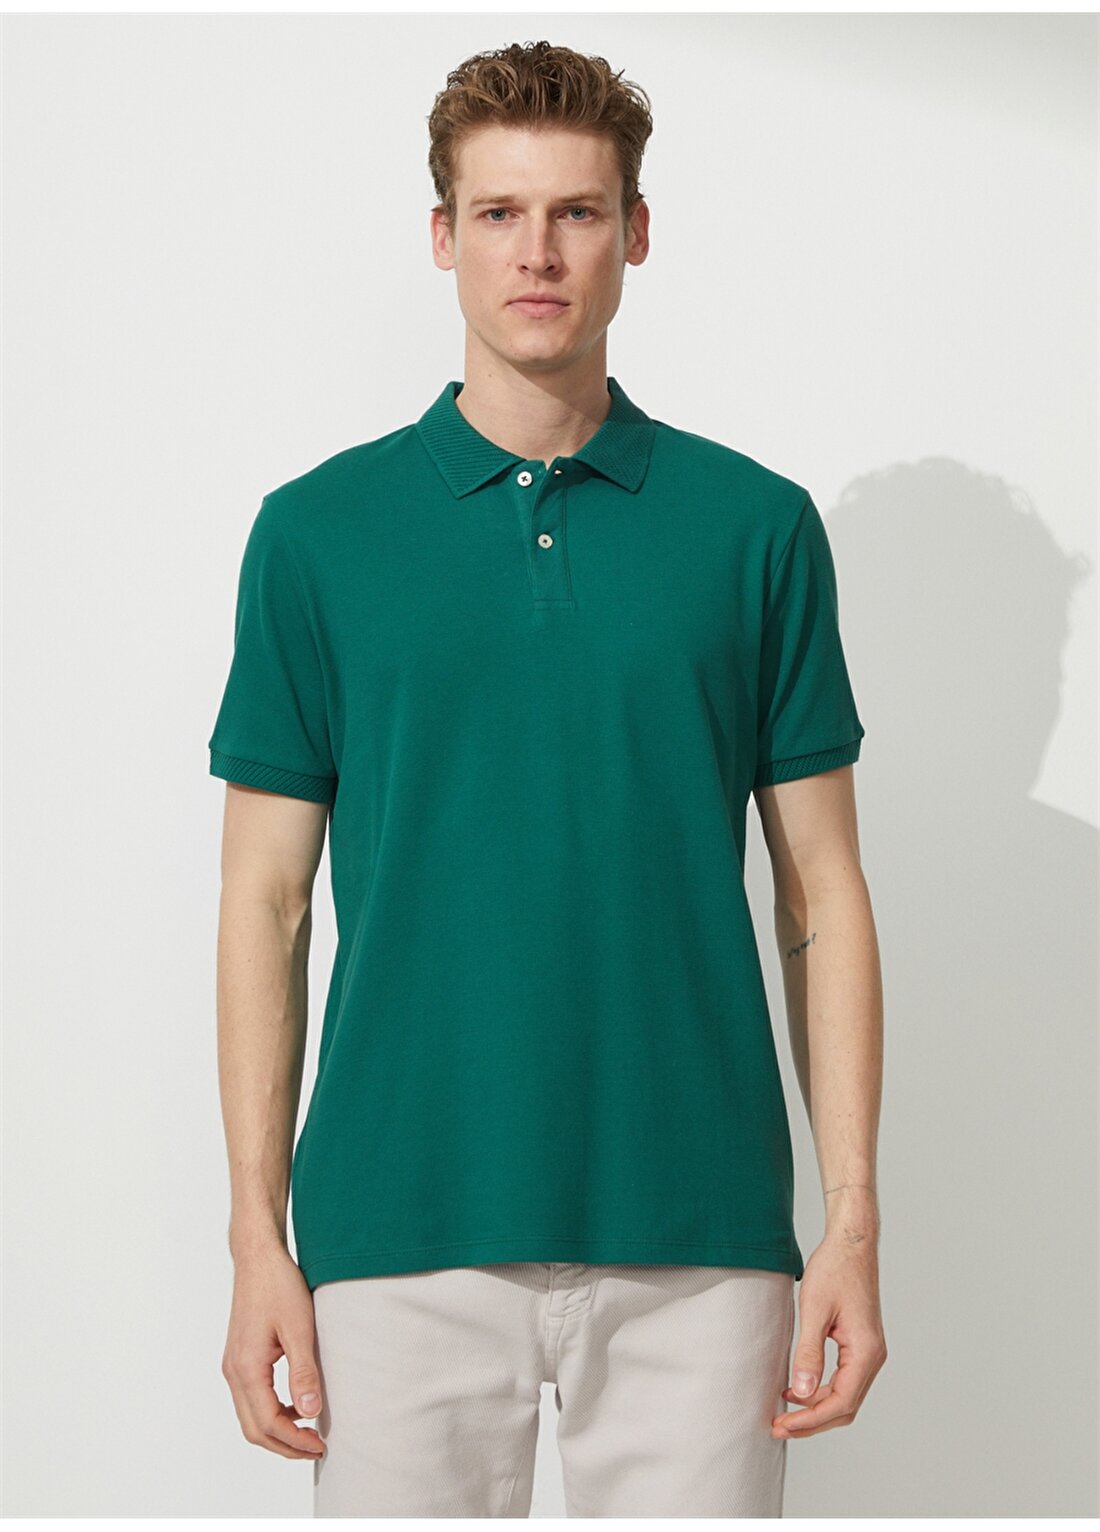 Altınyıldız Classics Koyu Yeşil Erkek Polo T-Shirt 4A9000000001